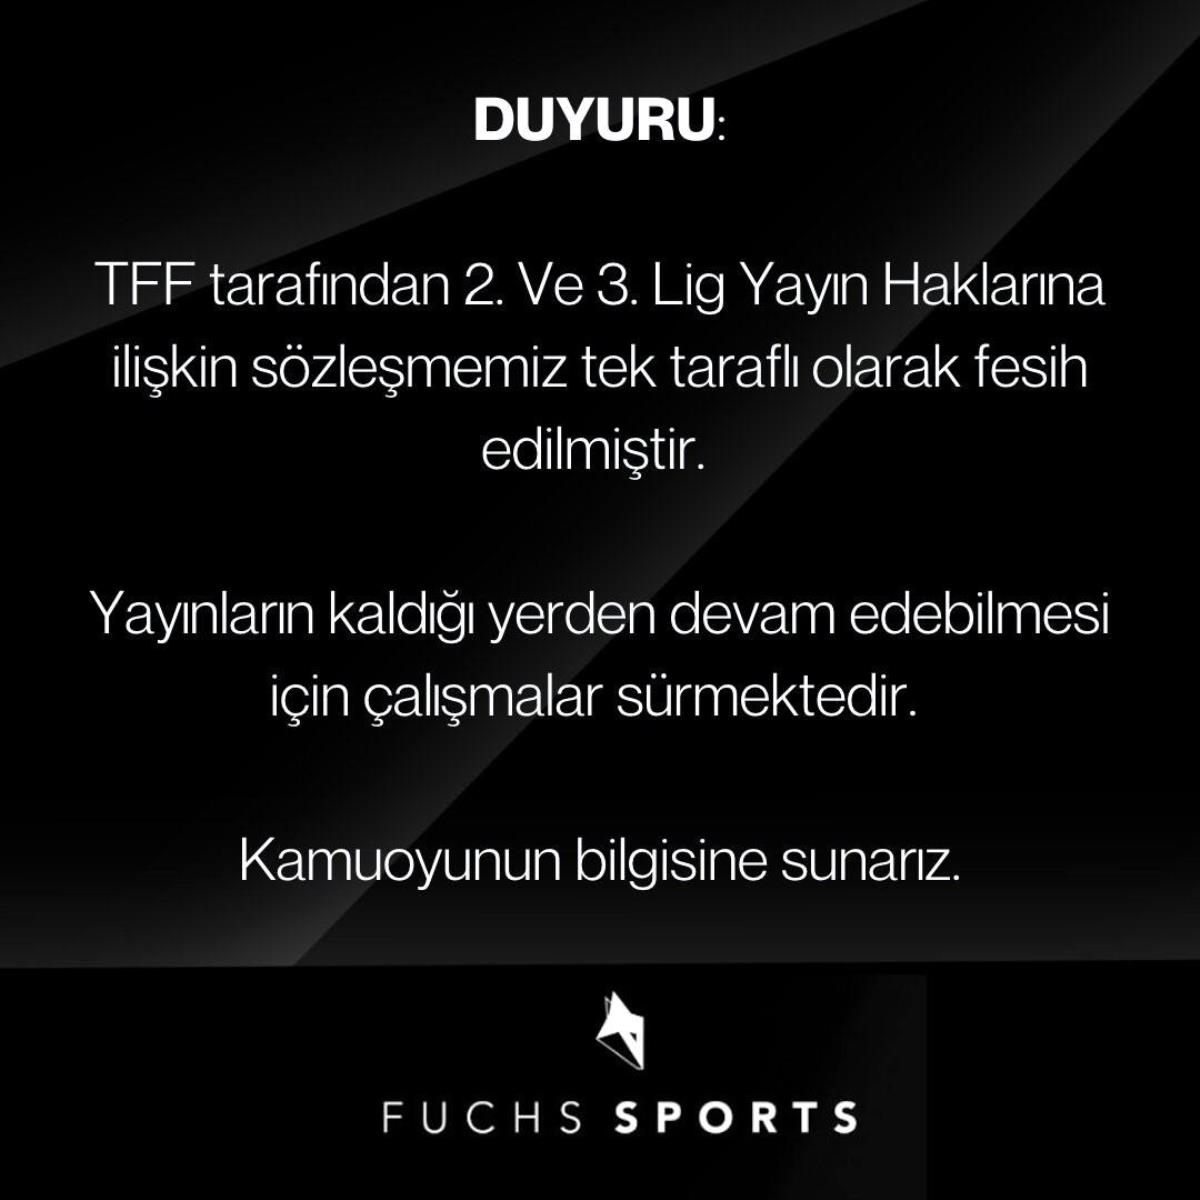 TFF, Fuchs Sports ile olan 2. ve 3. Lig yayın haklarına ait mukaveleyi feshetti